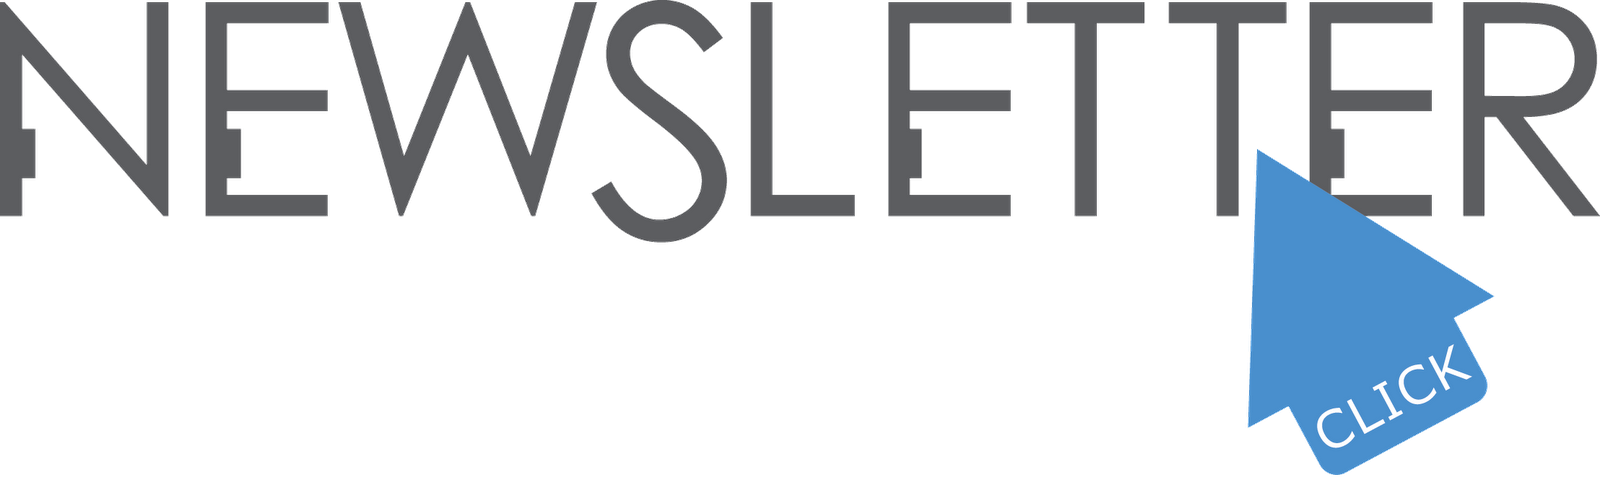 newsletter logo 10